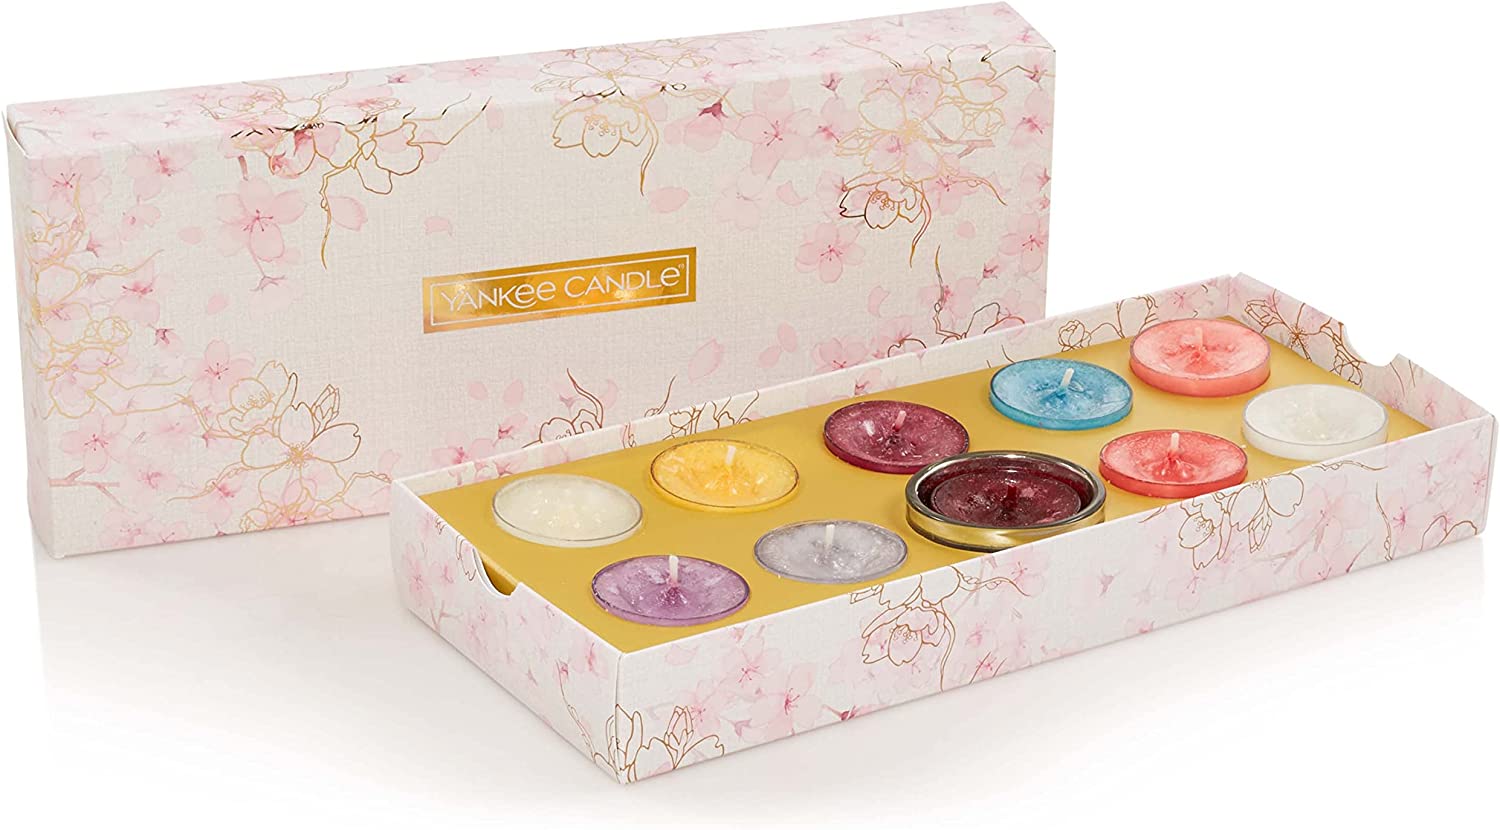 Yankee Candle Sakura Blossom Festival 10 Tea Lights 1 Holder Gift Set